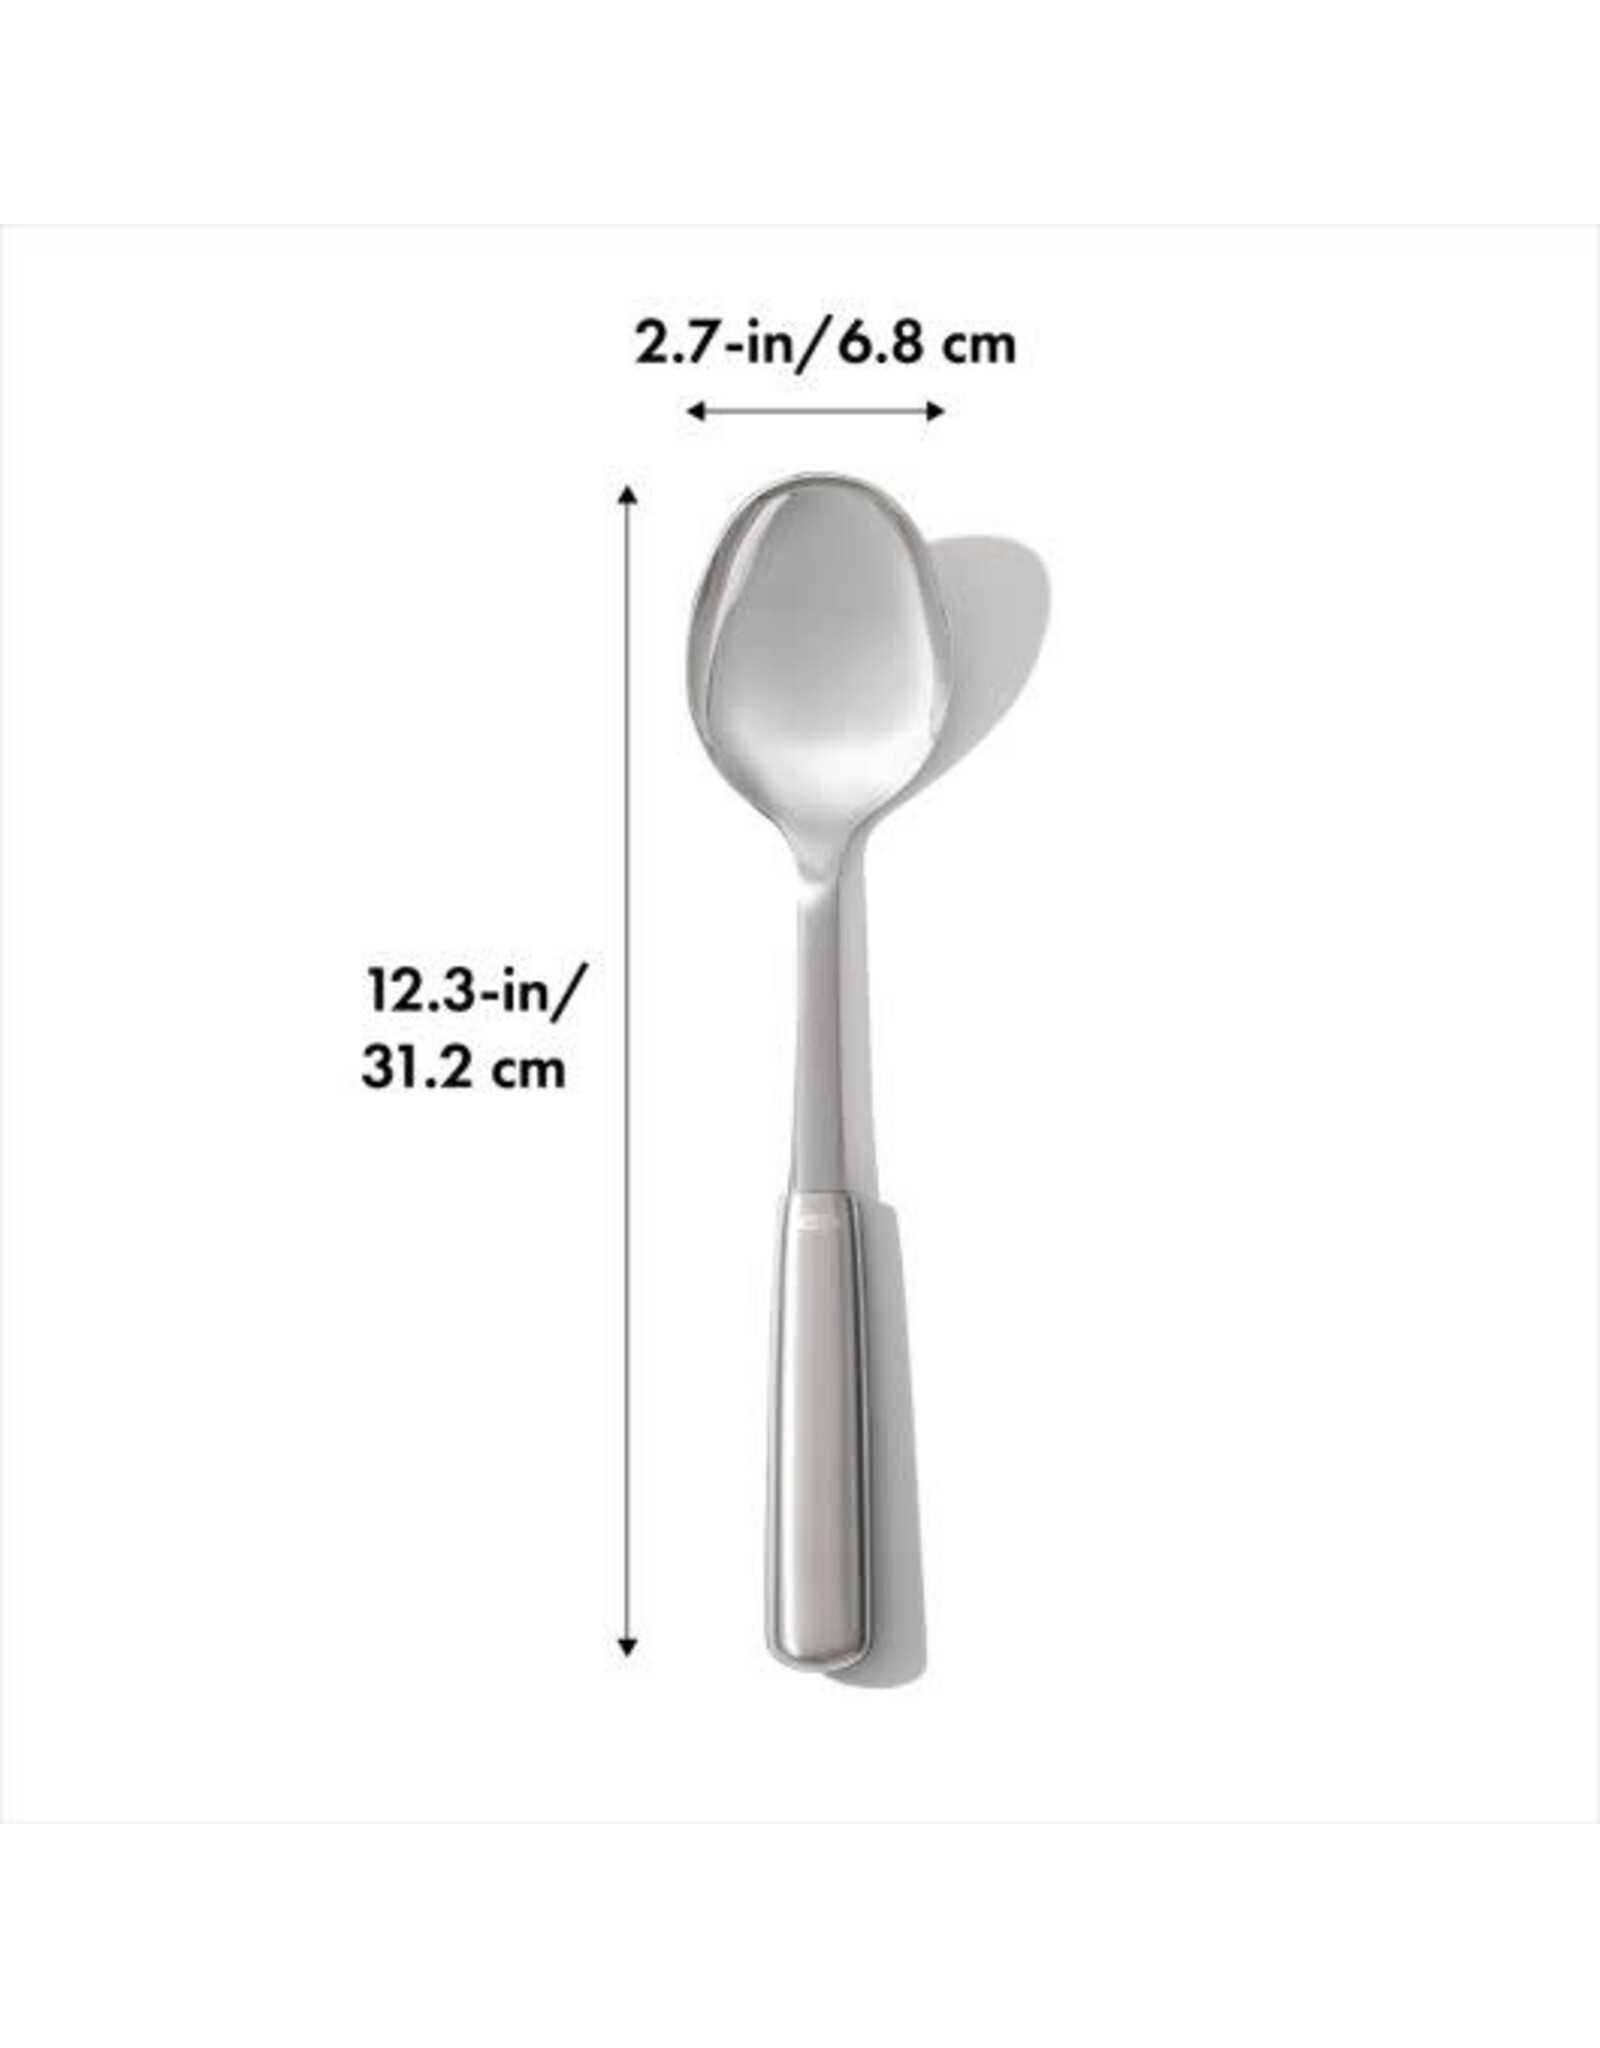 https://cdn.shoplightspeed.com/shops/635781/files/56590837/1600x2048x2/oxo-oxo-steel-cooking-spoon.jpg